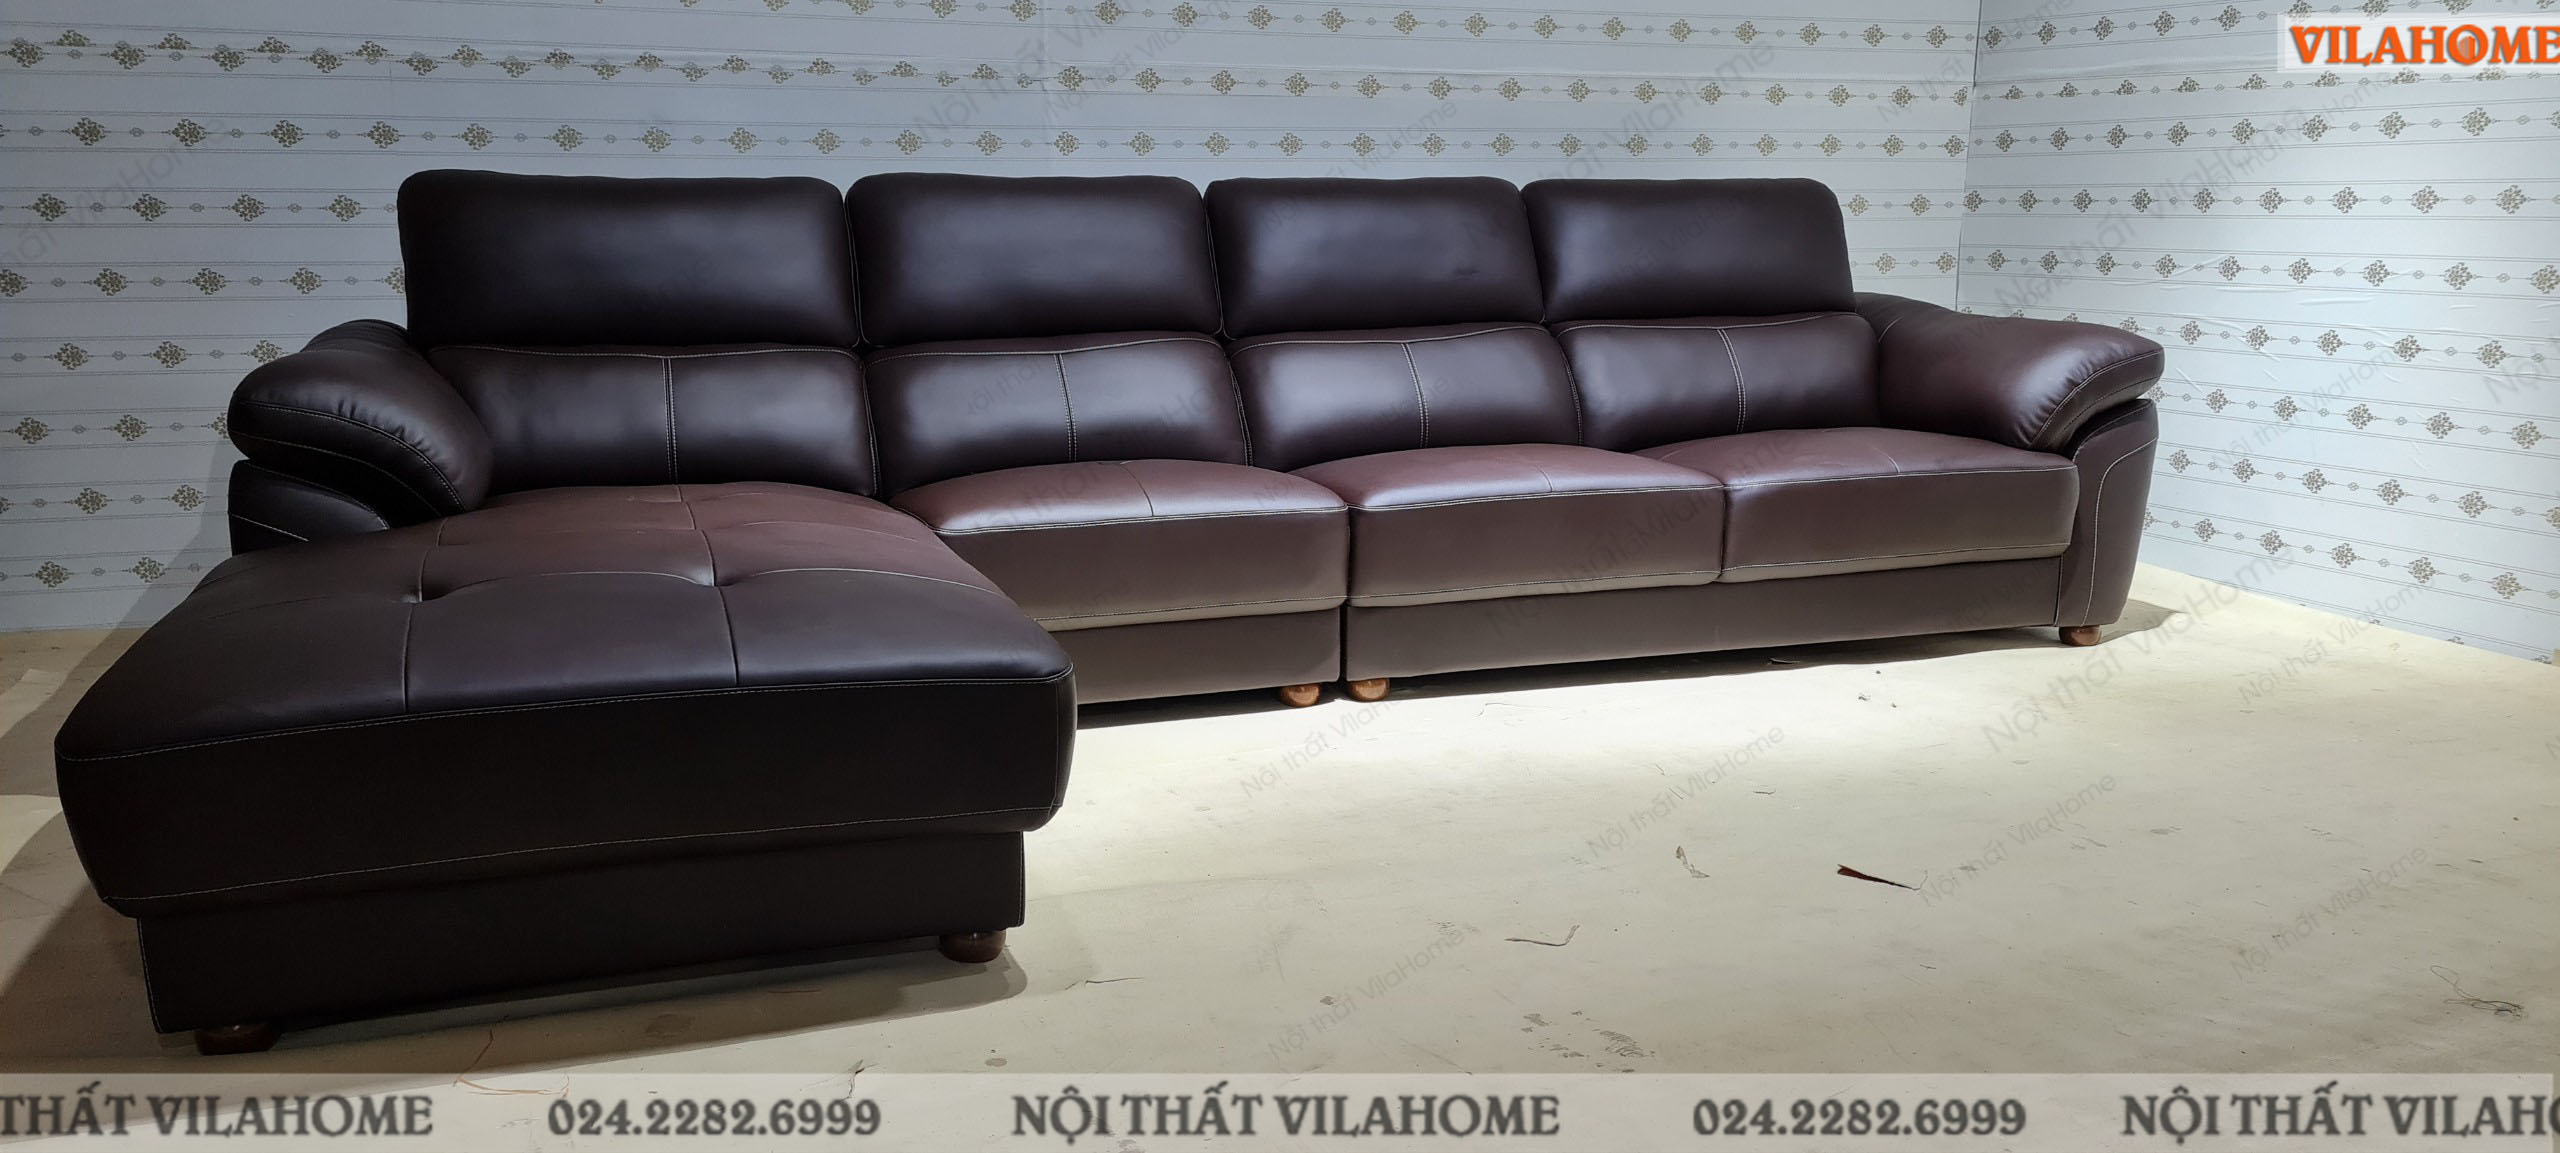 sofa da phòng khách hình chữ L cho khách hàng La Khê